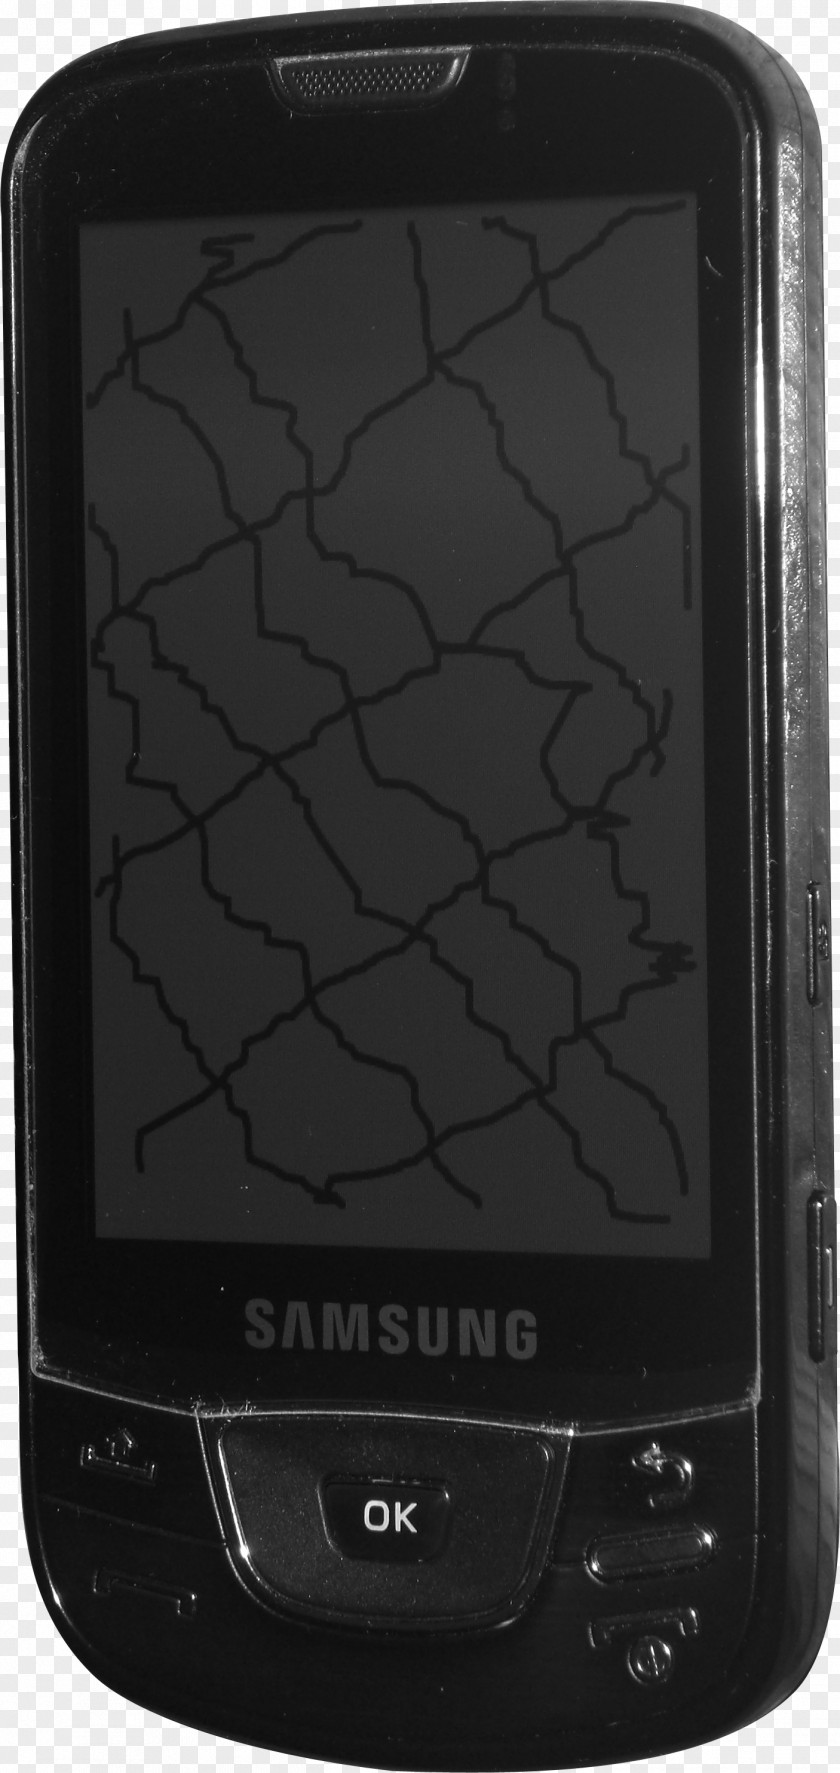 Samsung Galaxy Spica SGH-i900 PNG